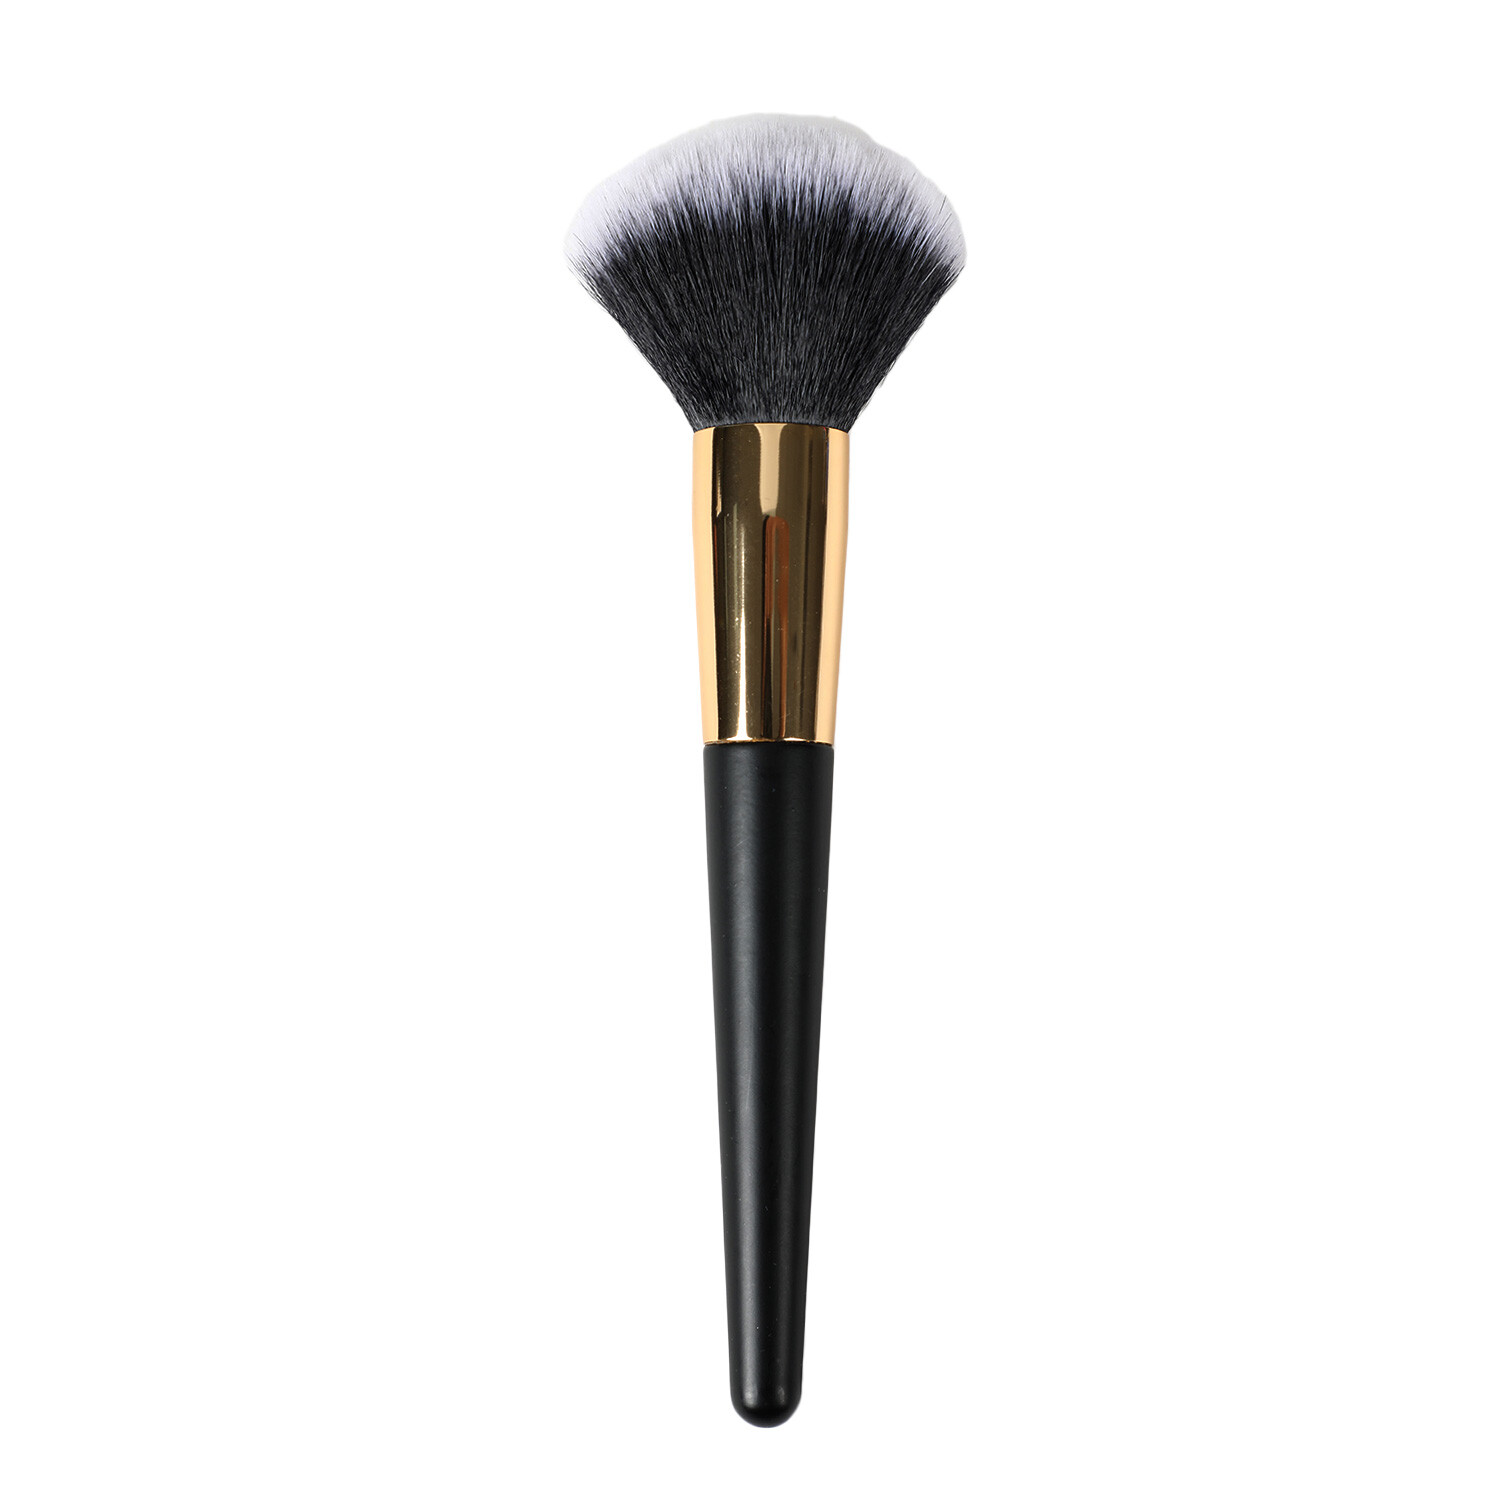 Powder Makeup Brush - Black Image